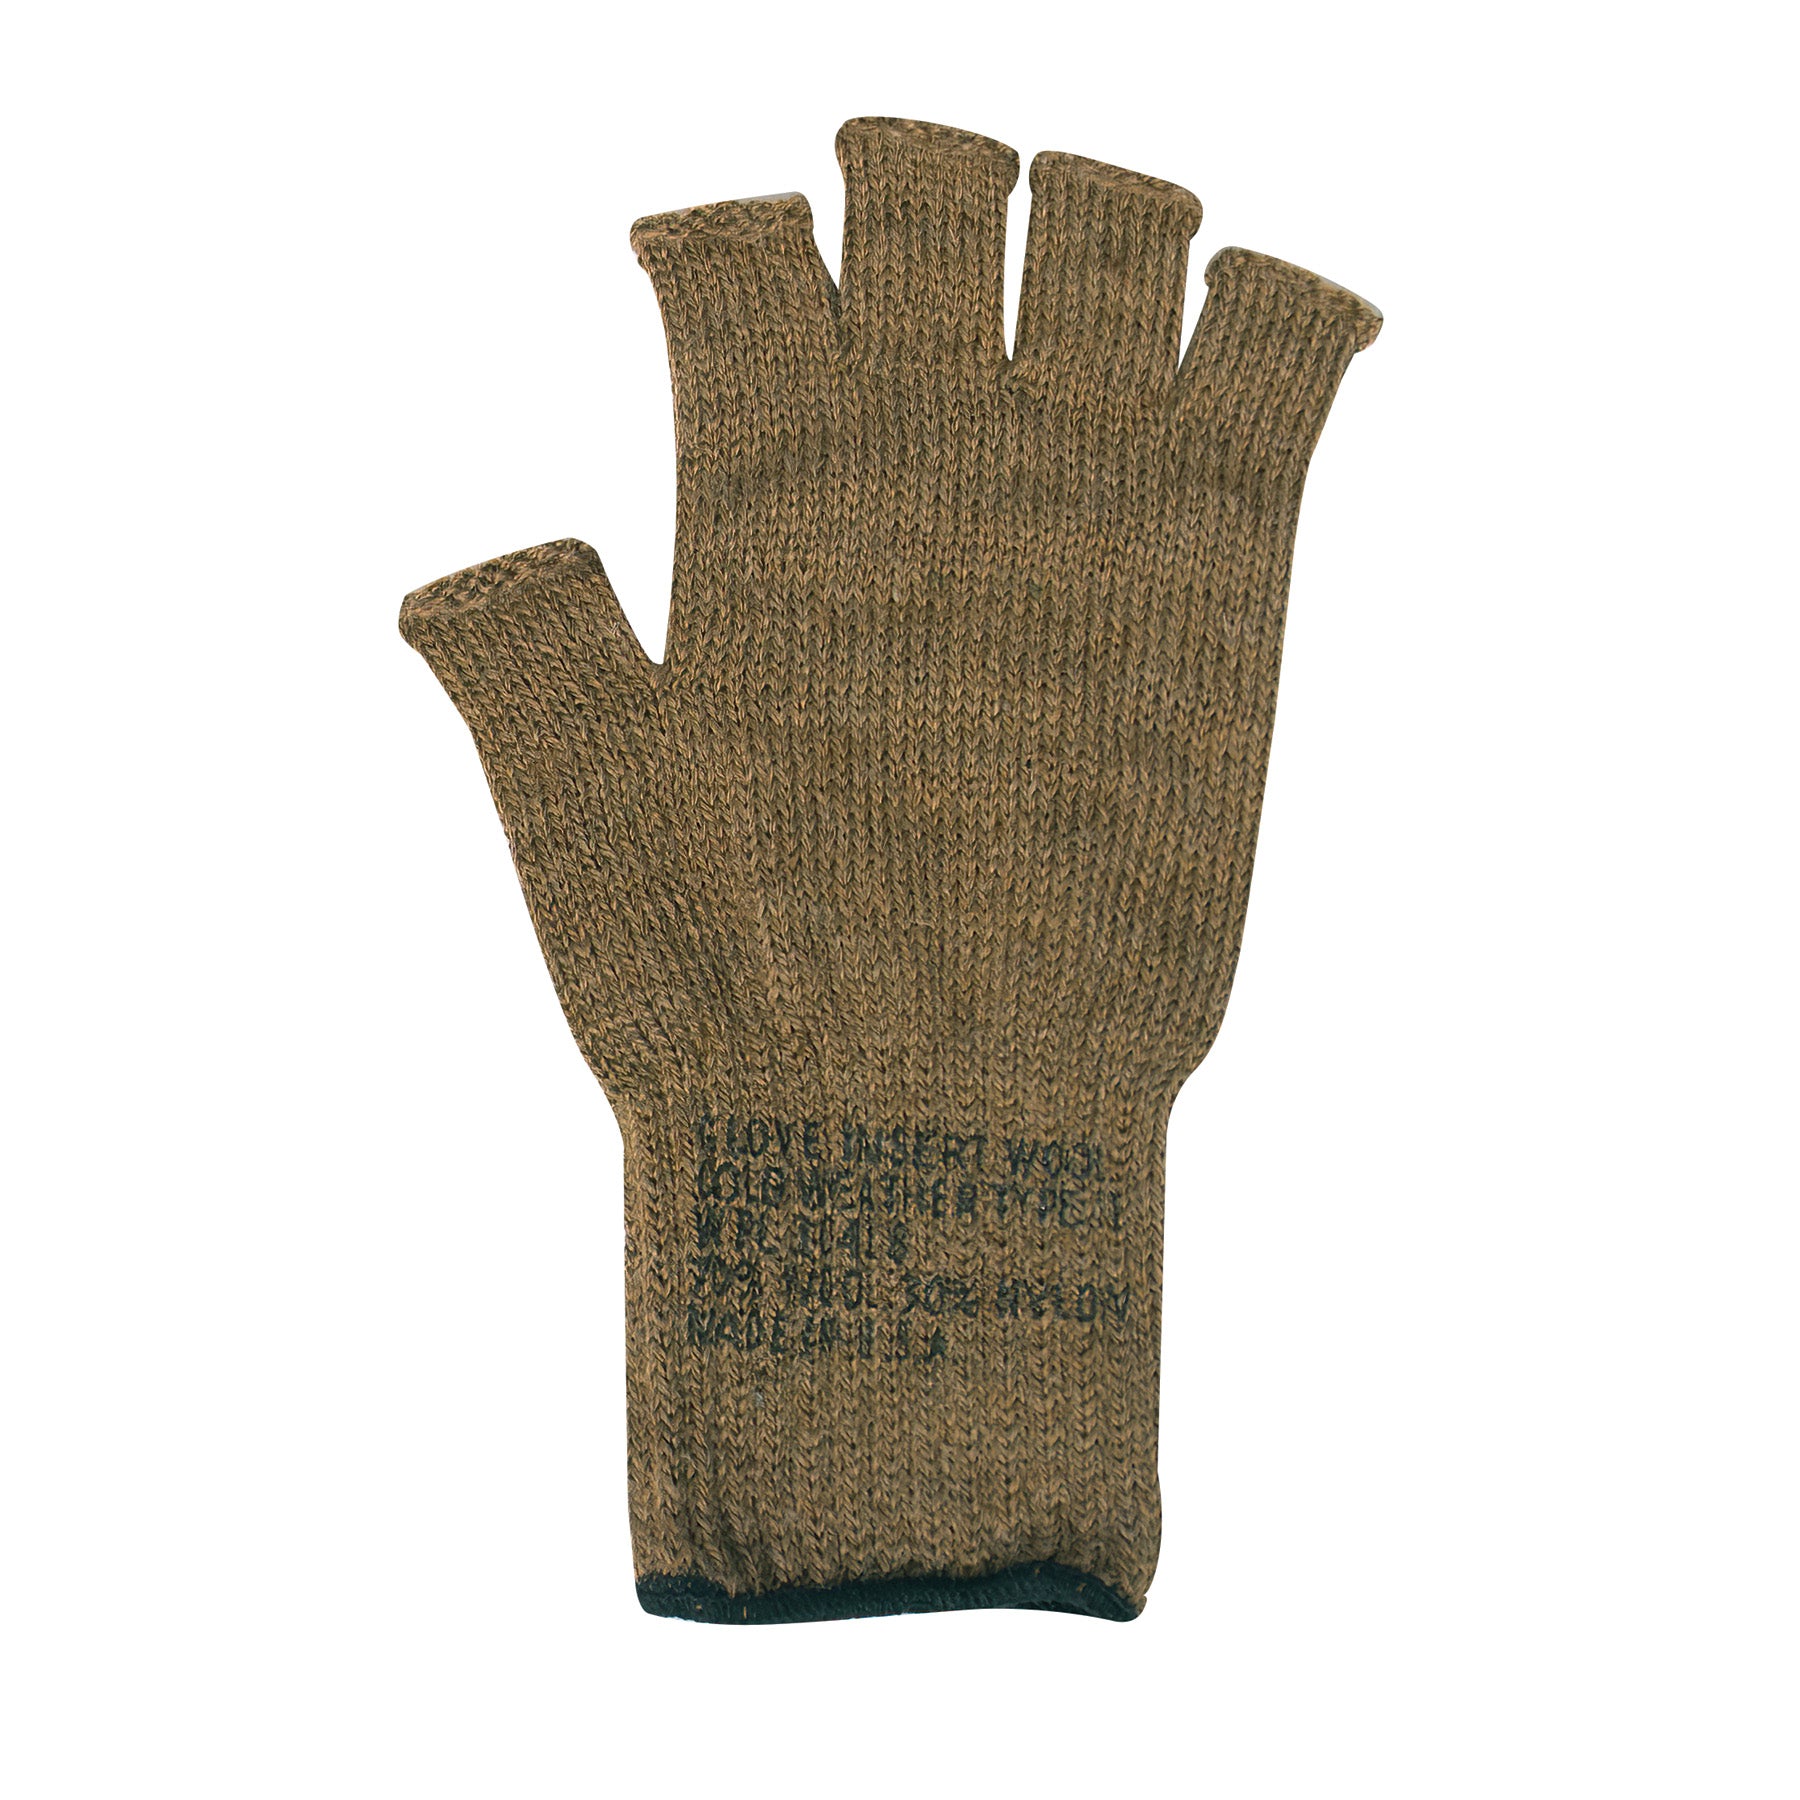 Milspec Fingerless Wool Gloves New Arrivals MilTac Tactical Military Outdoor Gear Australia